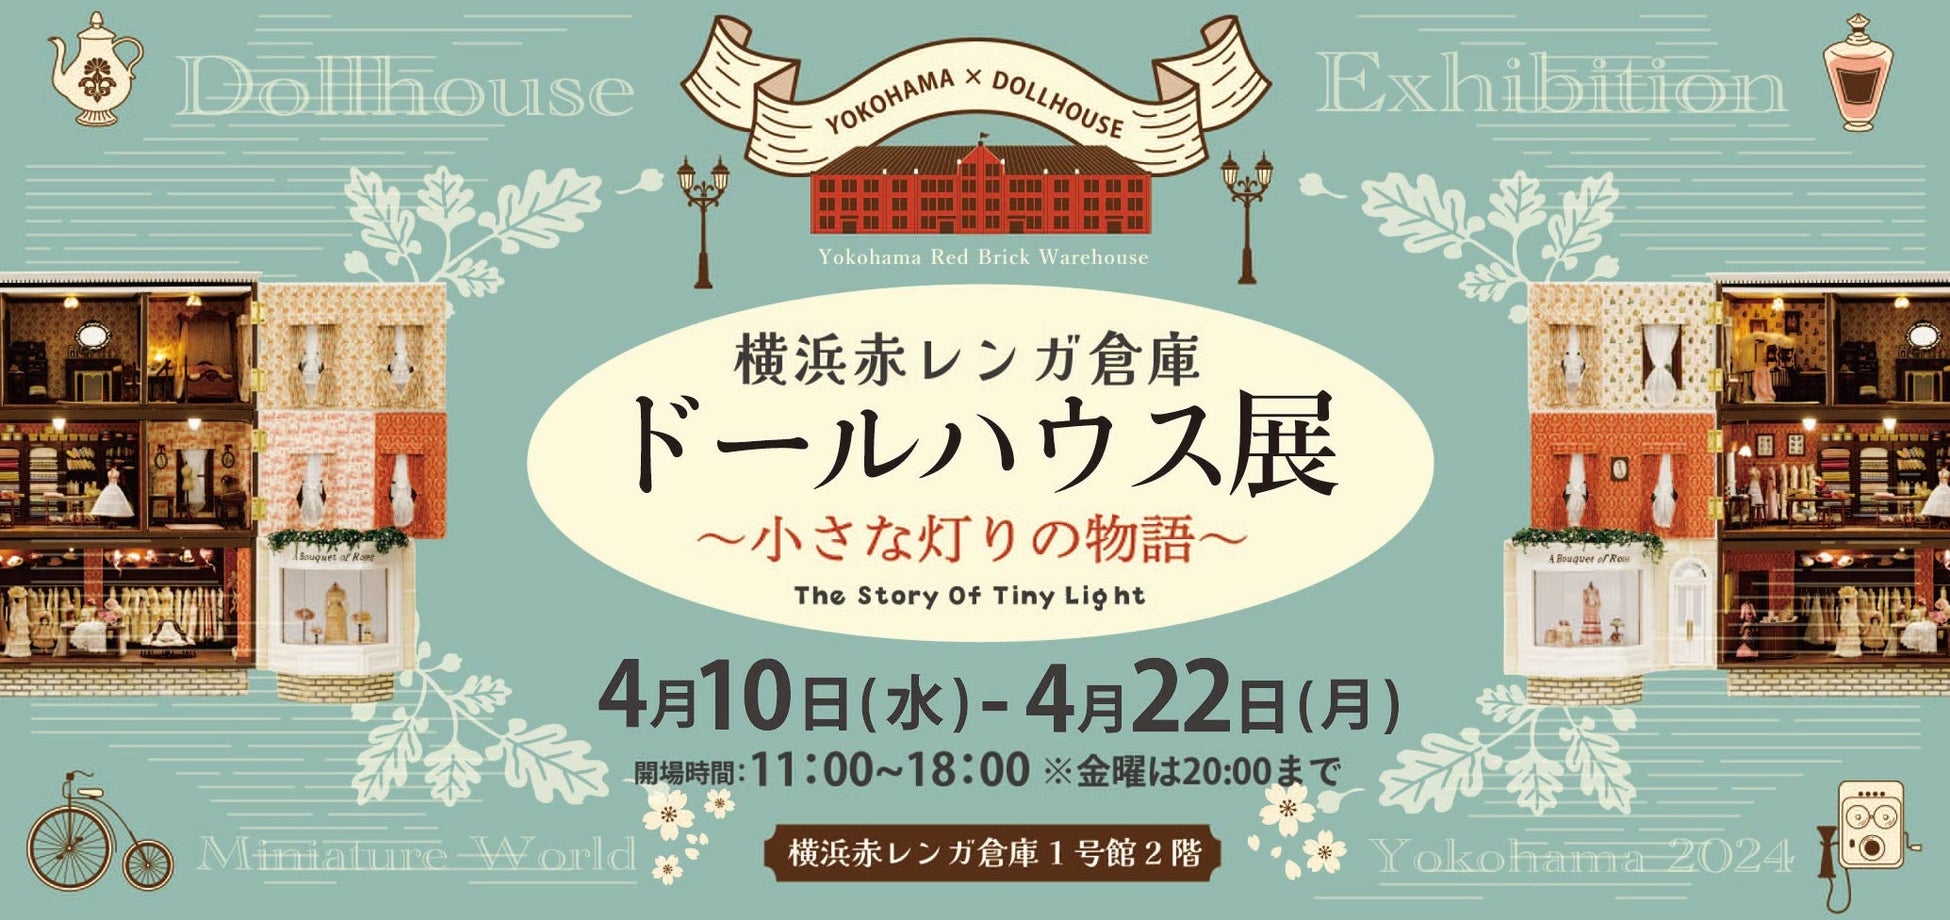 【 行列ができる展示 】横浜赤レンガ倉庫で開催！小さなミニチュアの世界が楽しめる美術展「ドールハウス」を80点を一挙展示！